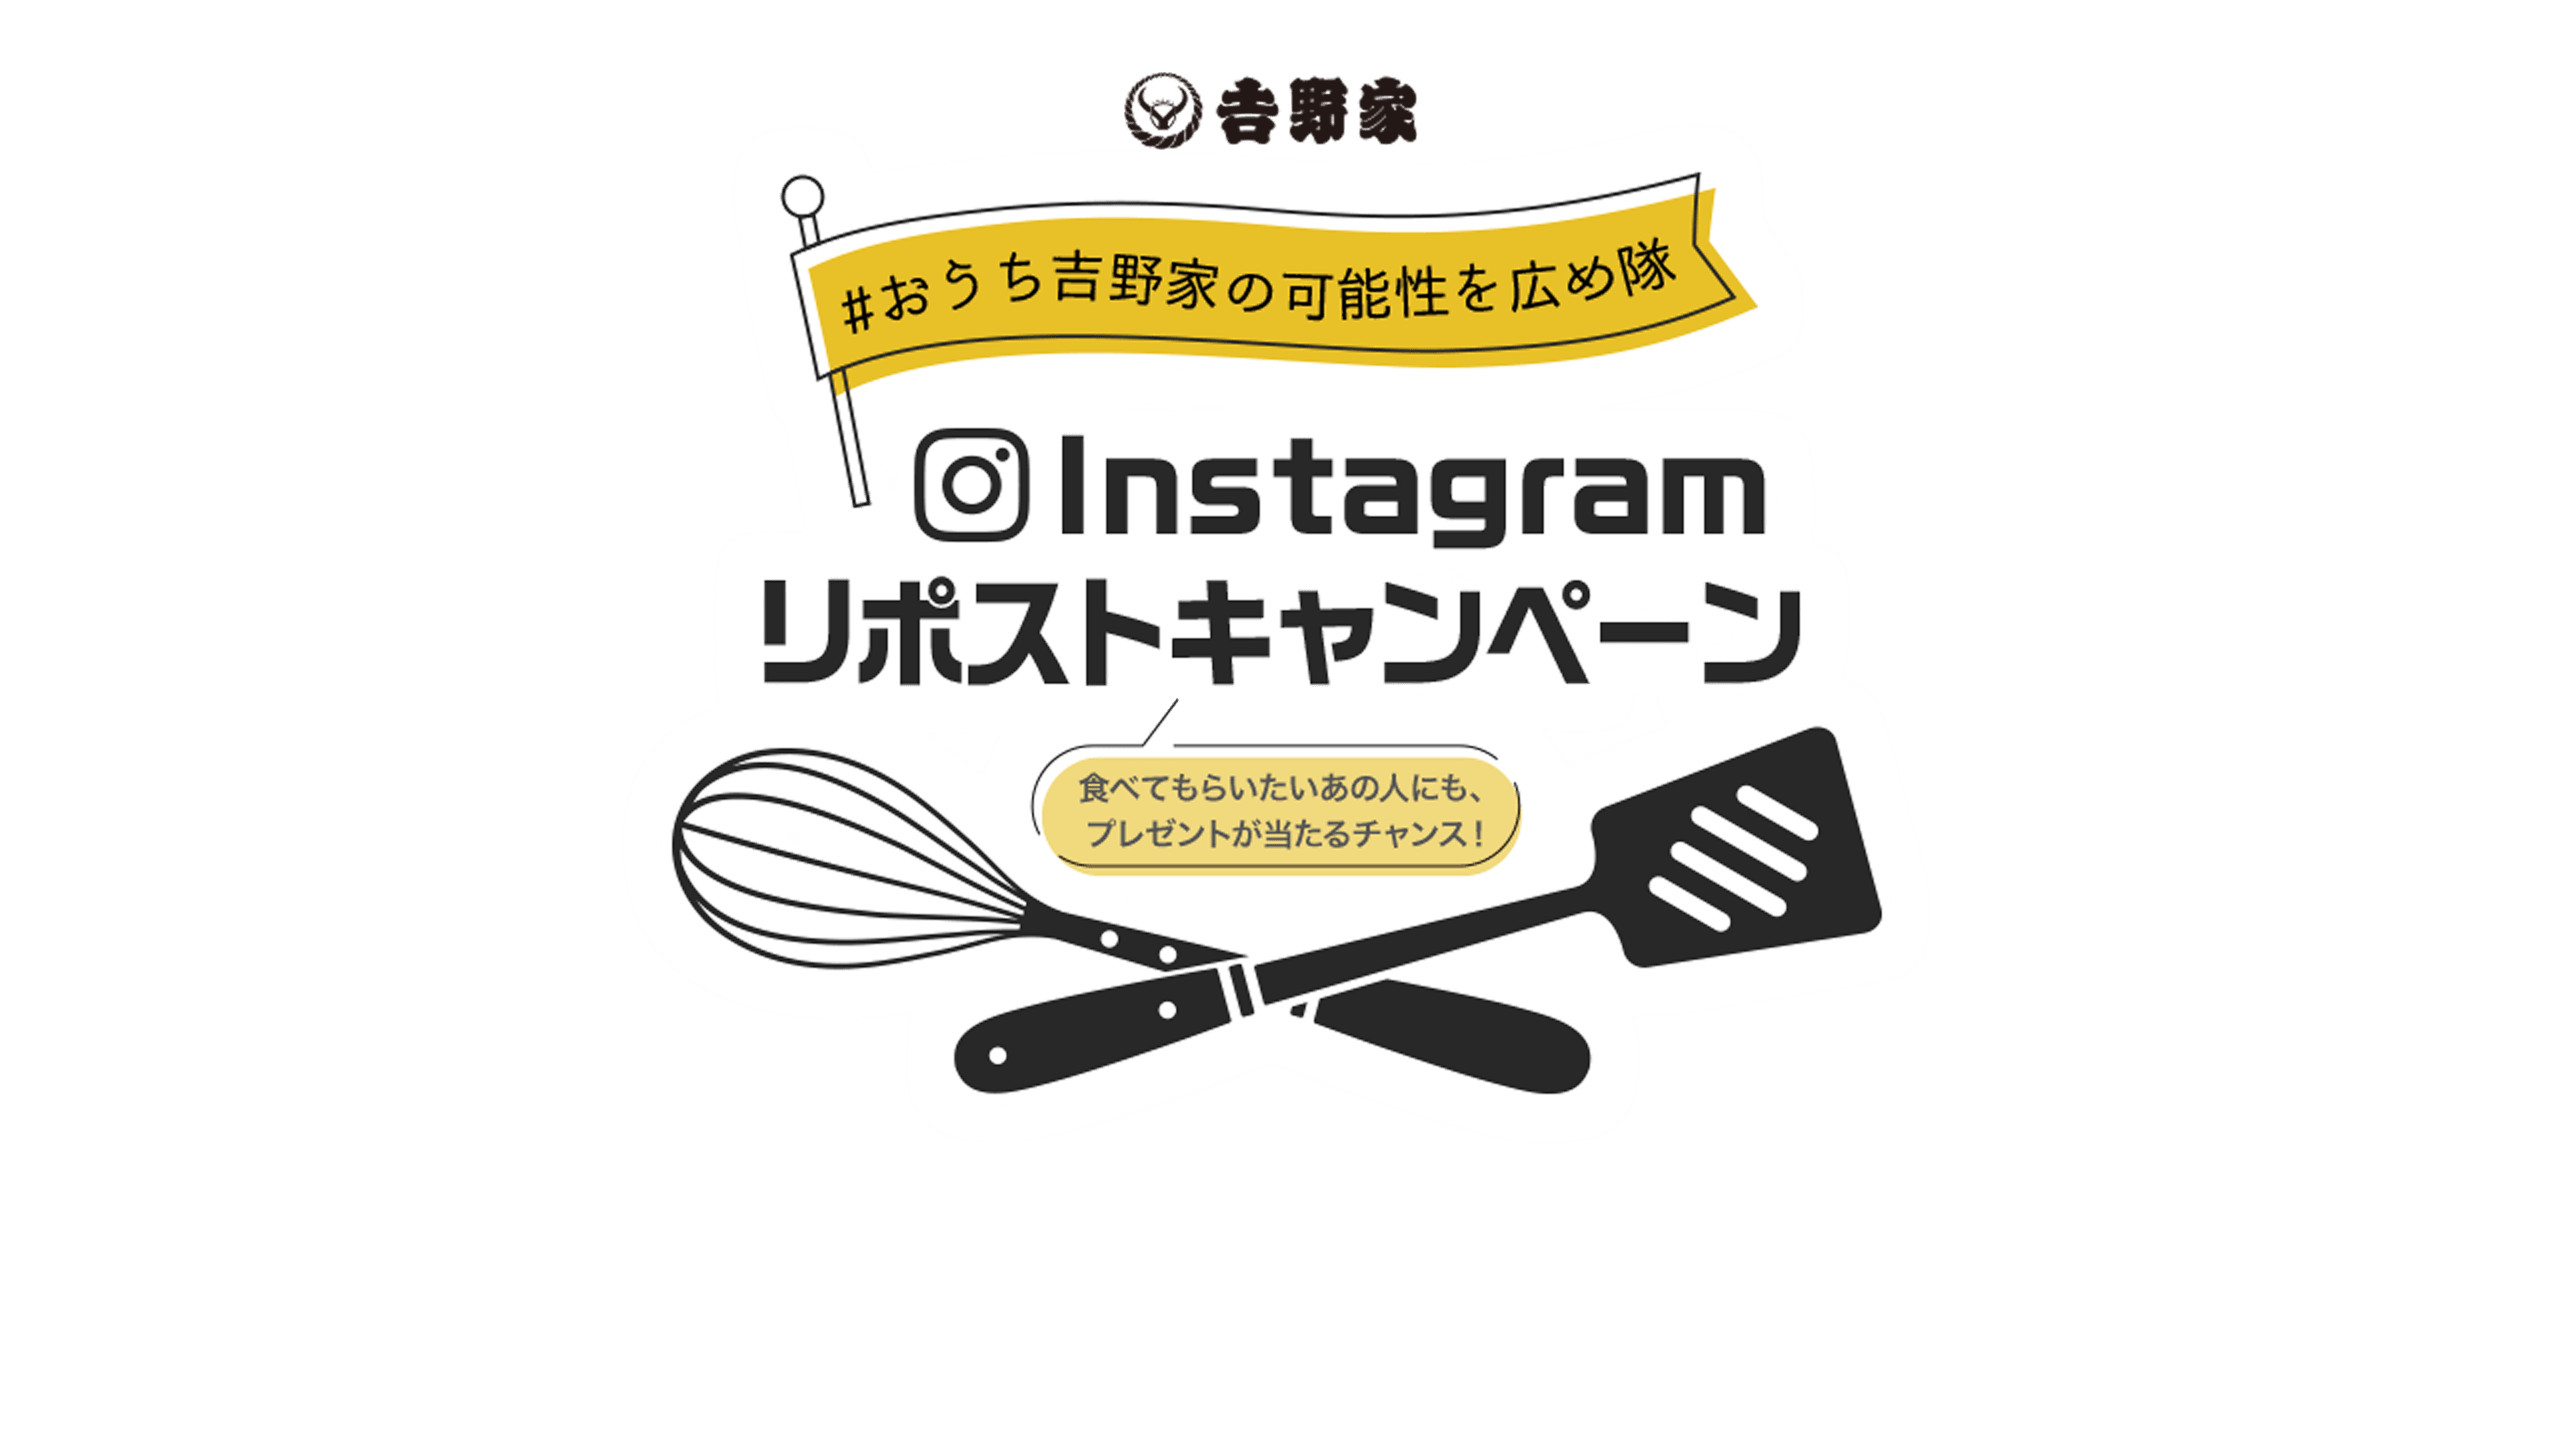 #おうち吉野家の可能性を広め隊 Instagramリポストキャンペーン